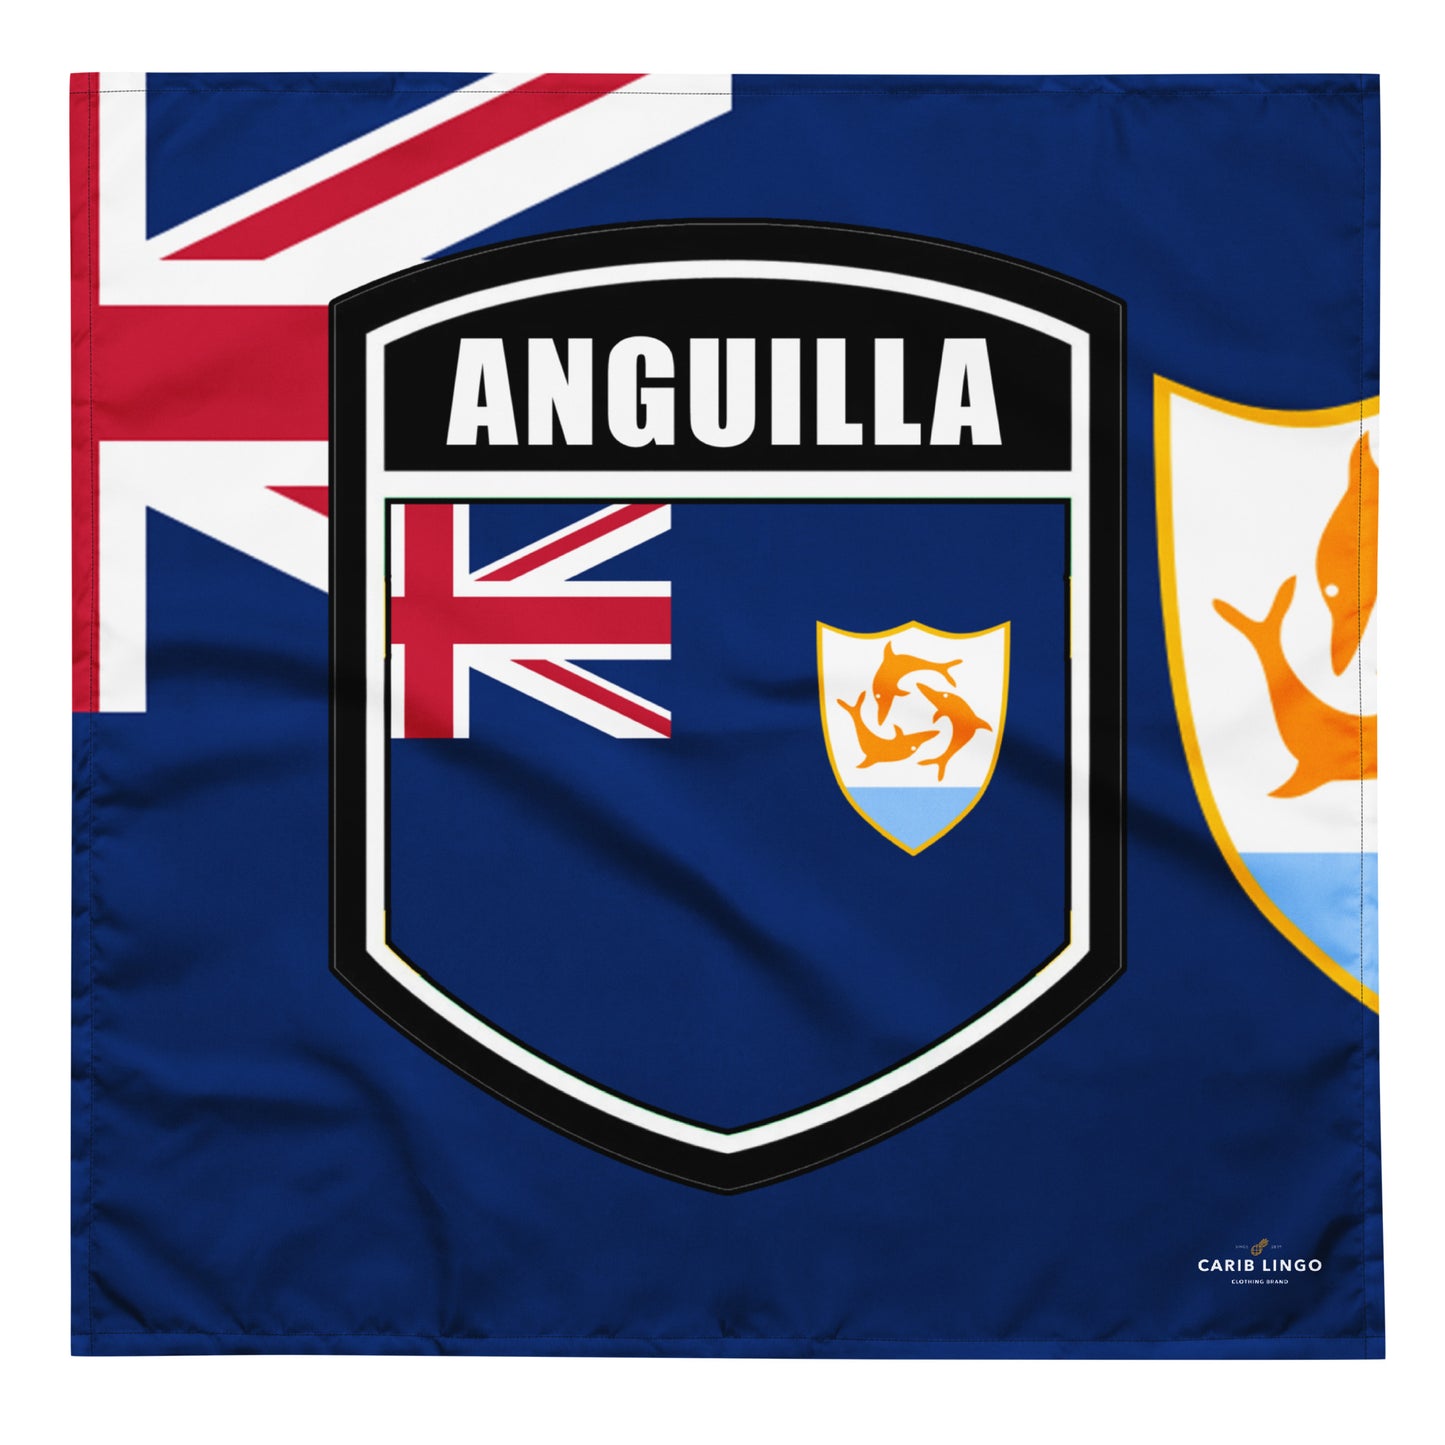 Anguilla bandana